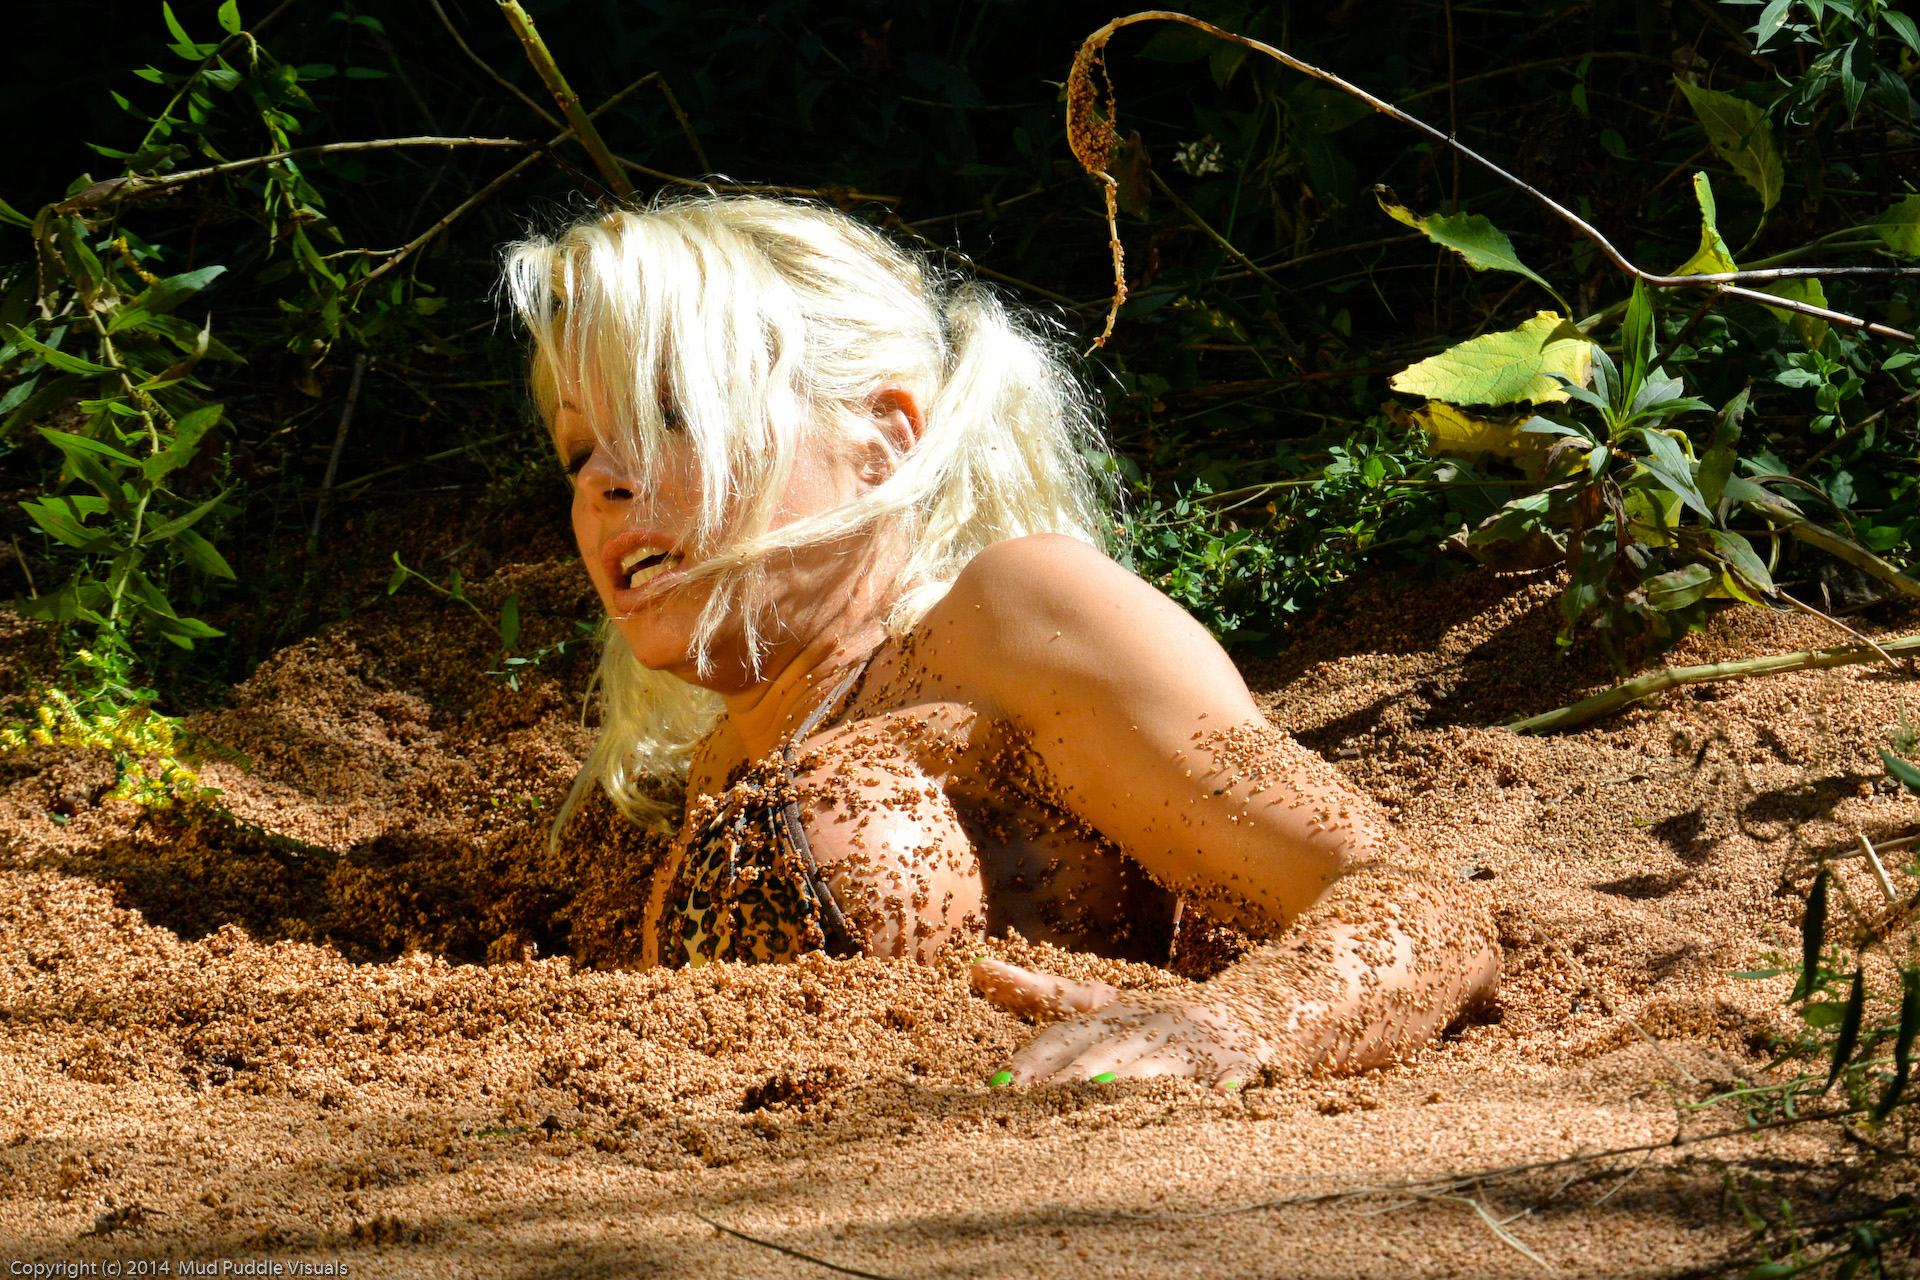 Mud bunny quicksand